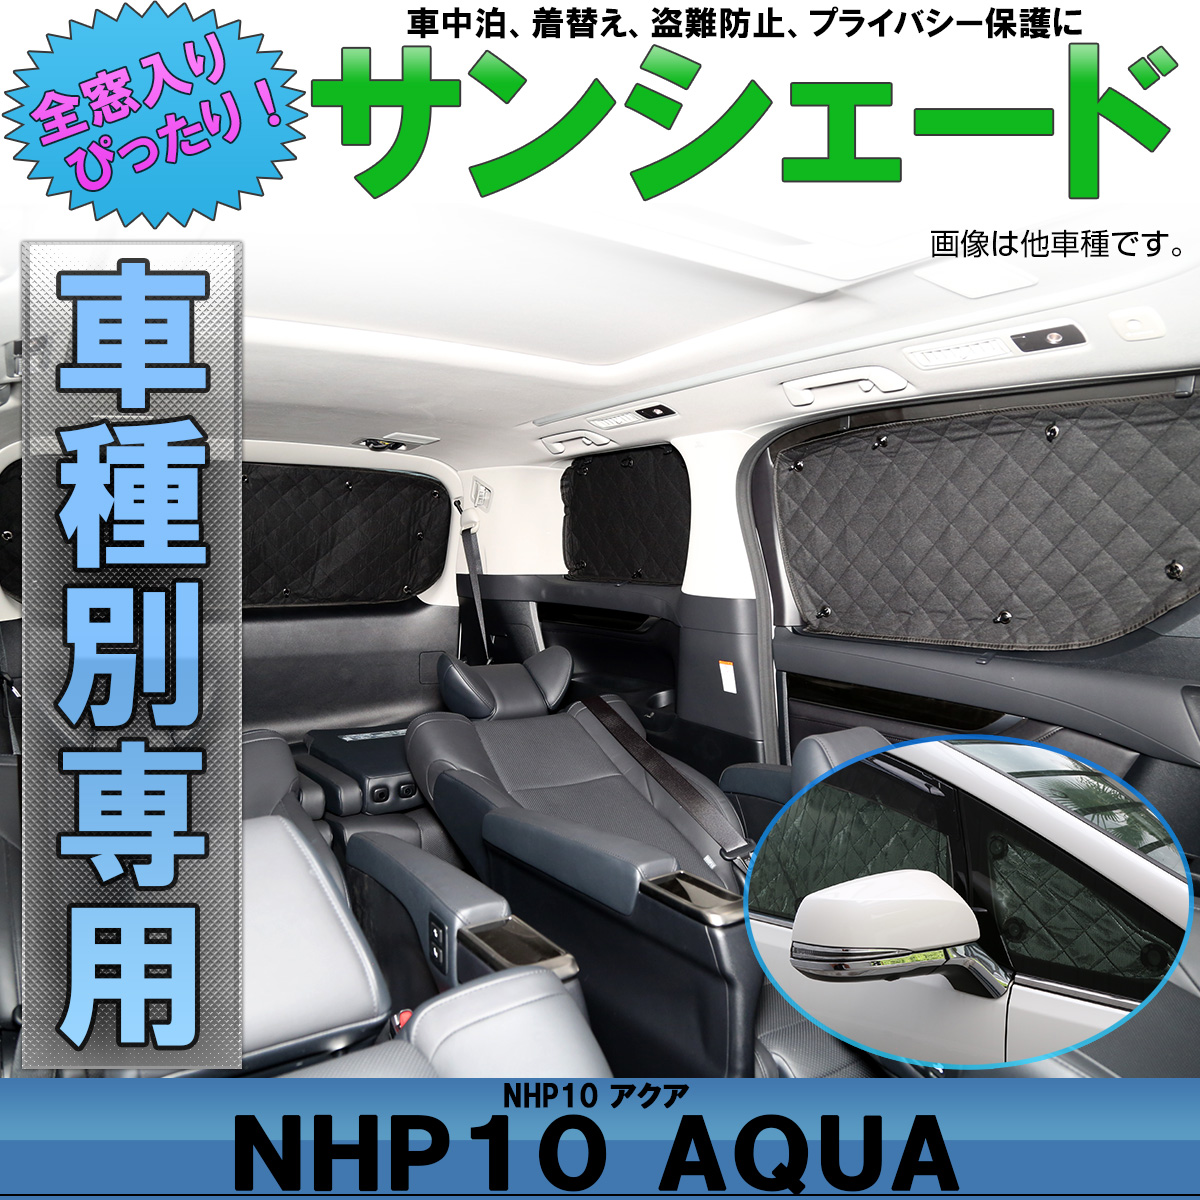 サンシェード Nhp10系 アクア Aqua 専用 クロスオーバーも対応 全窓セット 5層 ブラックメッシュ 車中泊 防犯 トヨタ S 810